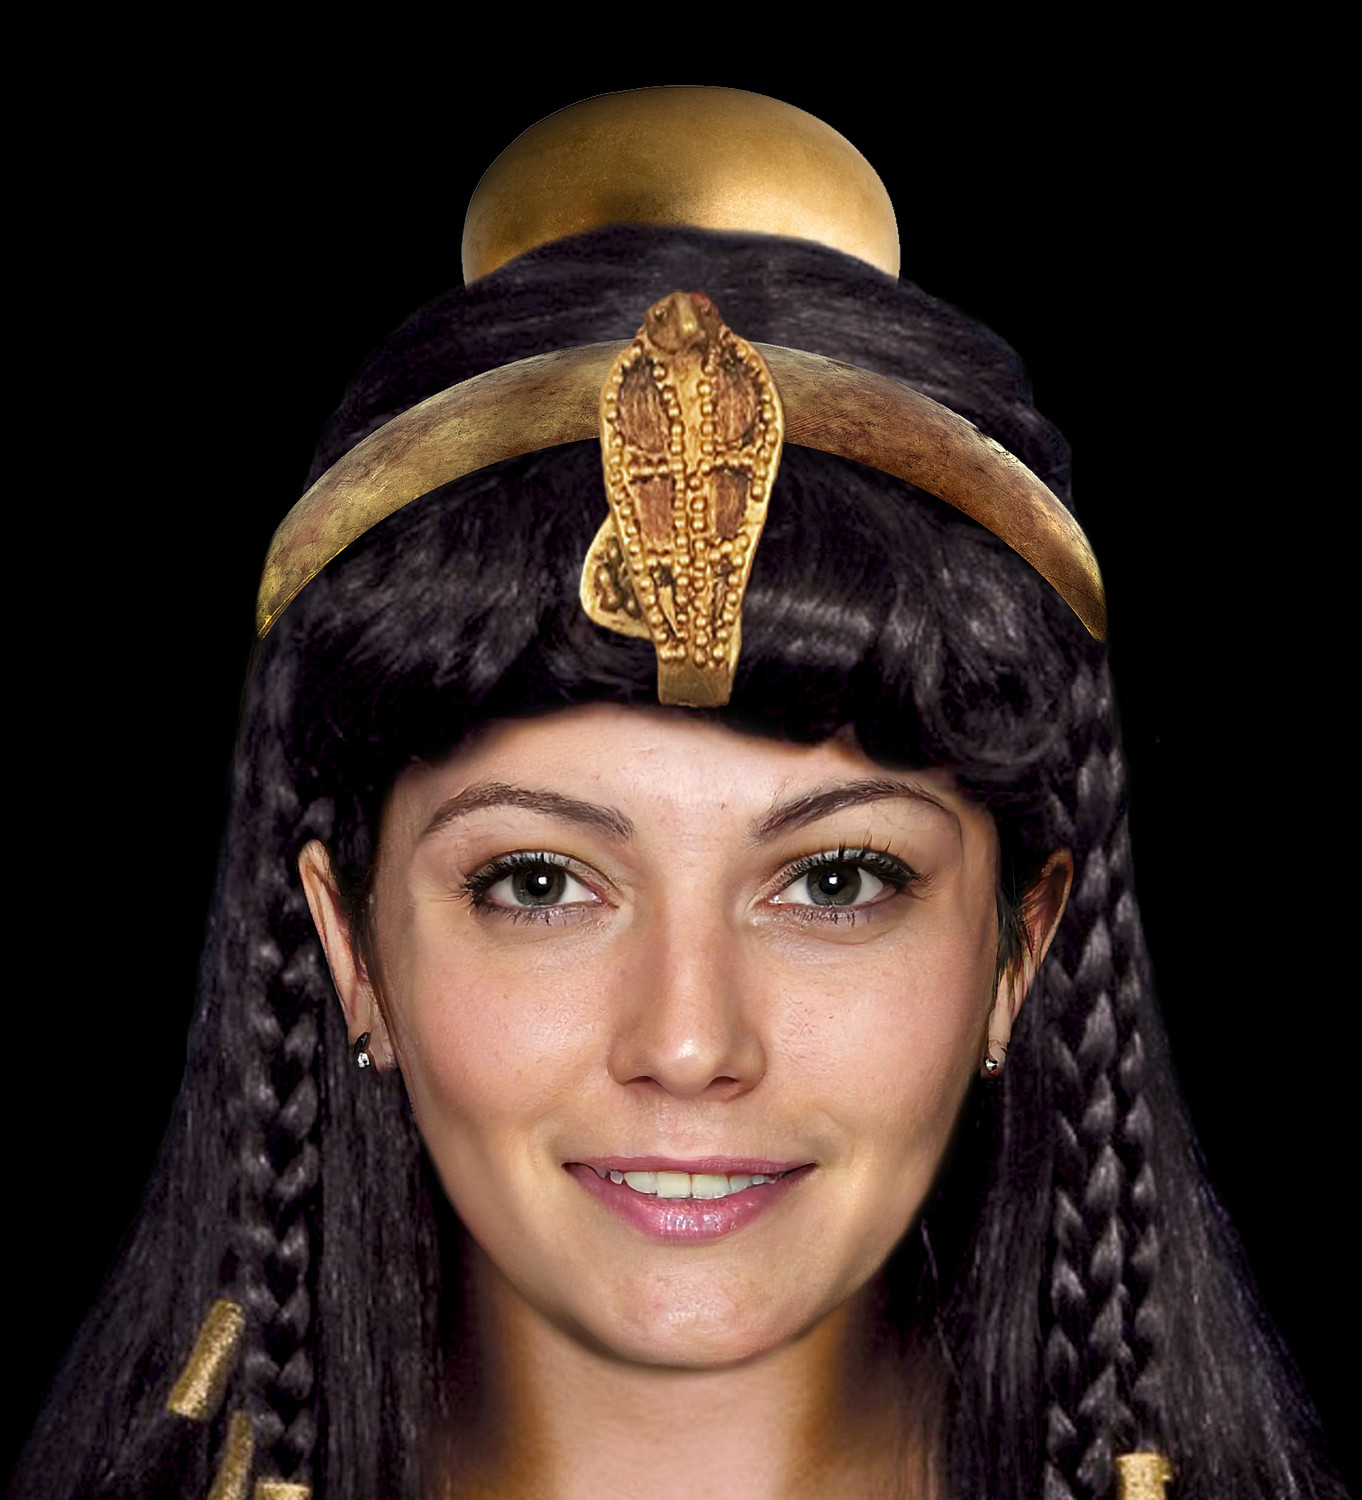 Cleópatra, a última rainha do Egito – Arqueologia Egípcia